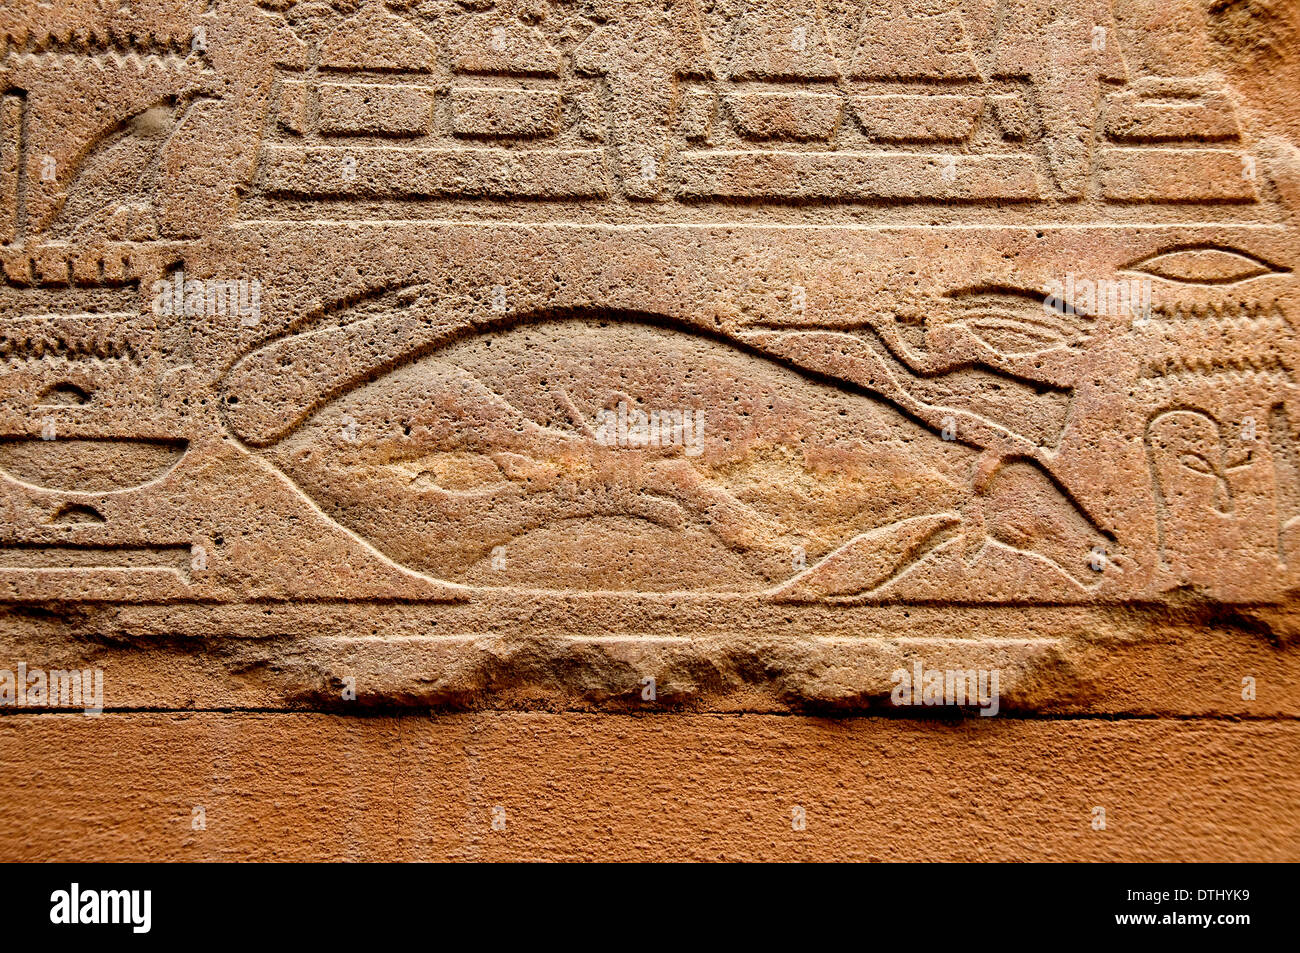 Sollievo dalla Cappella Rossa di Hatshepsut che venne demolito dal suo successore Thutmosi III. Foto Stock